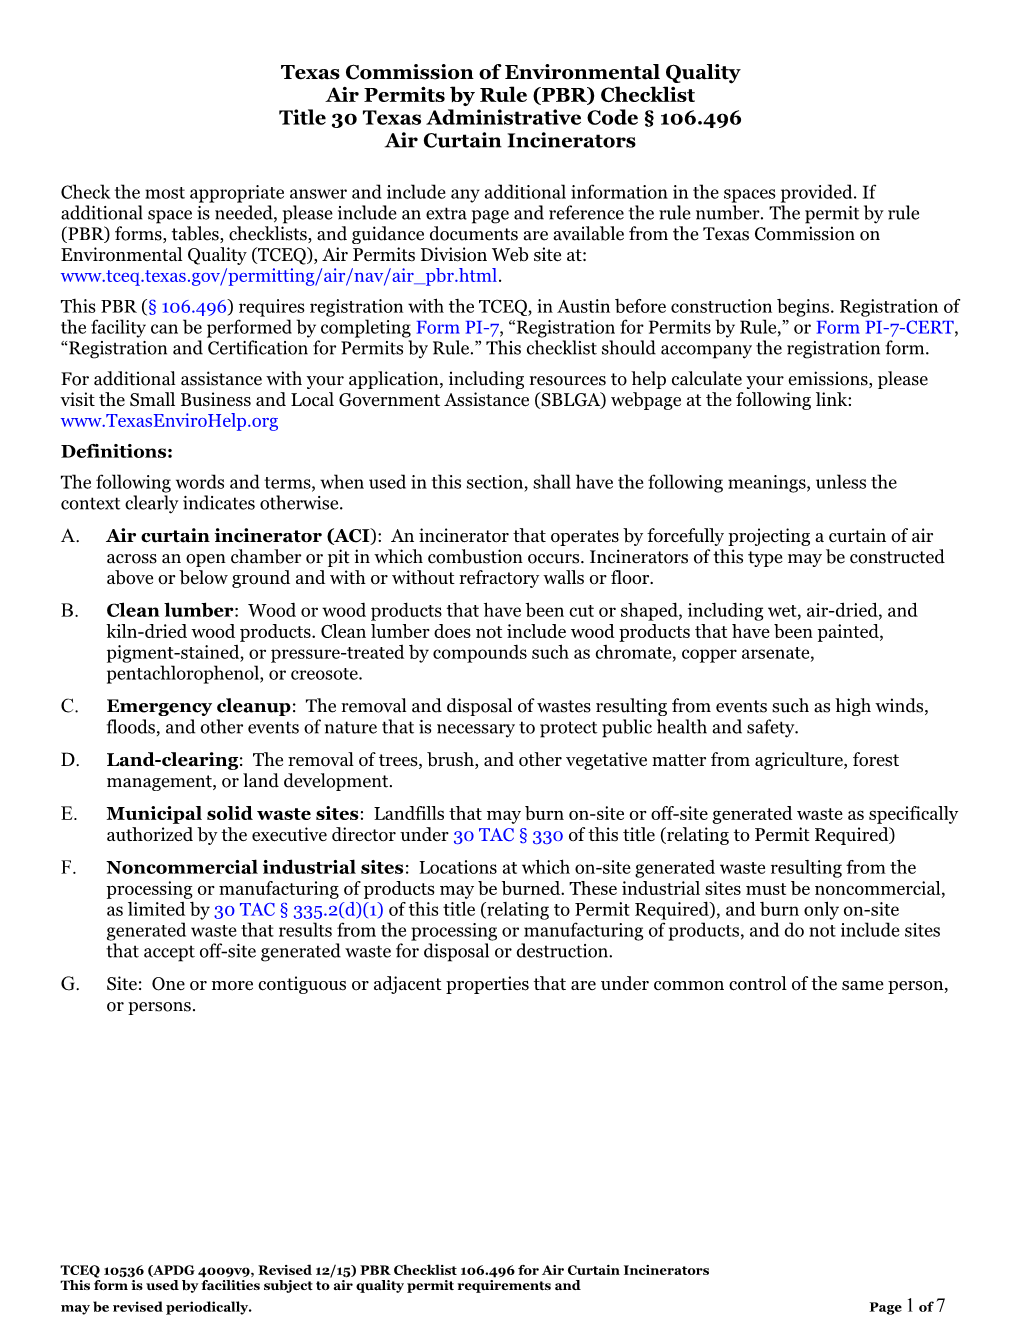 TCEQ- Air Permits by Rule (PBR) Checklist Title 30 Texas Administrative Code 106.496Air